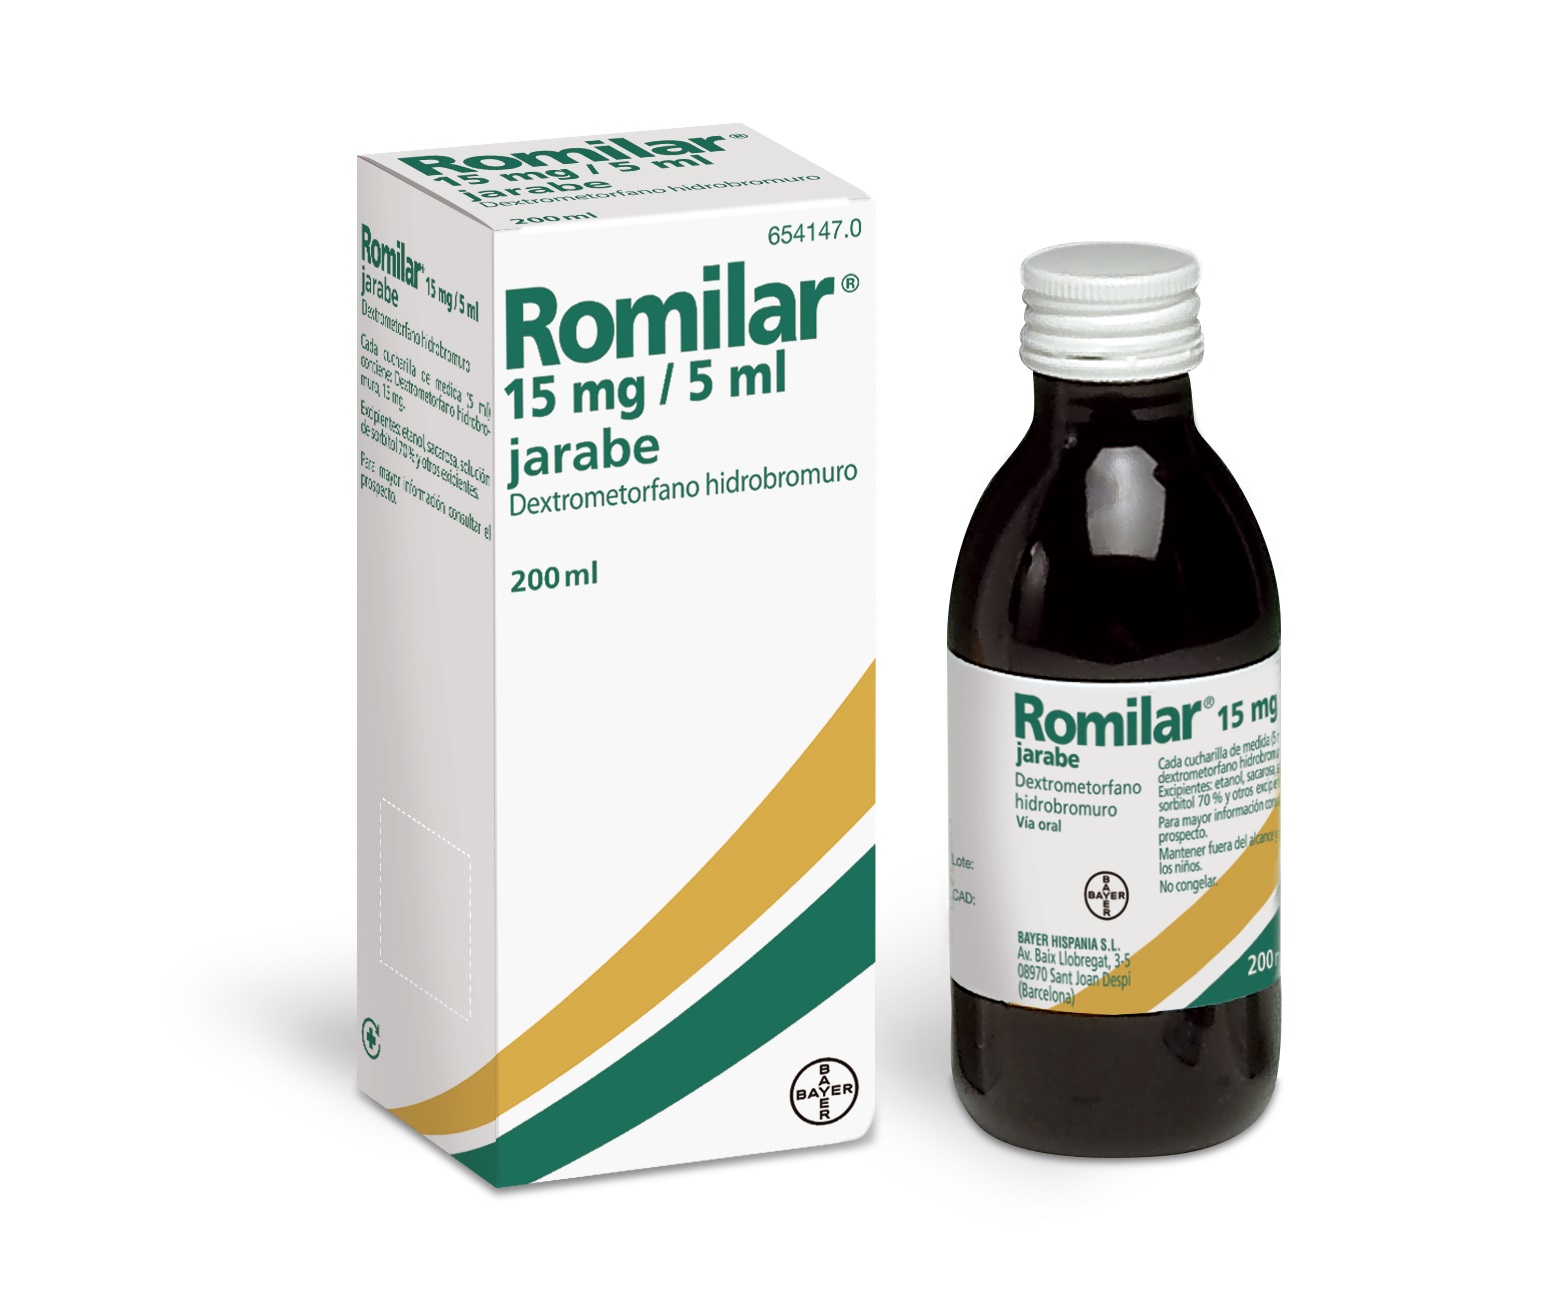 Romilar - image 0